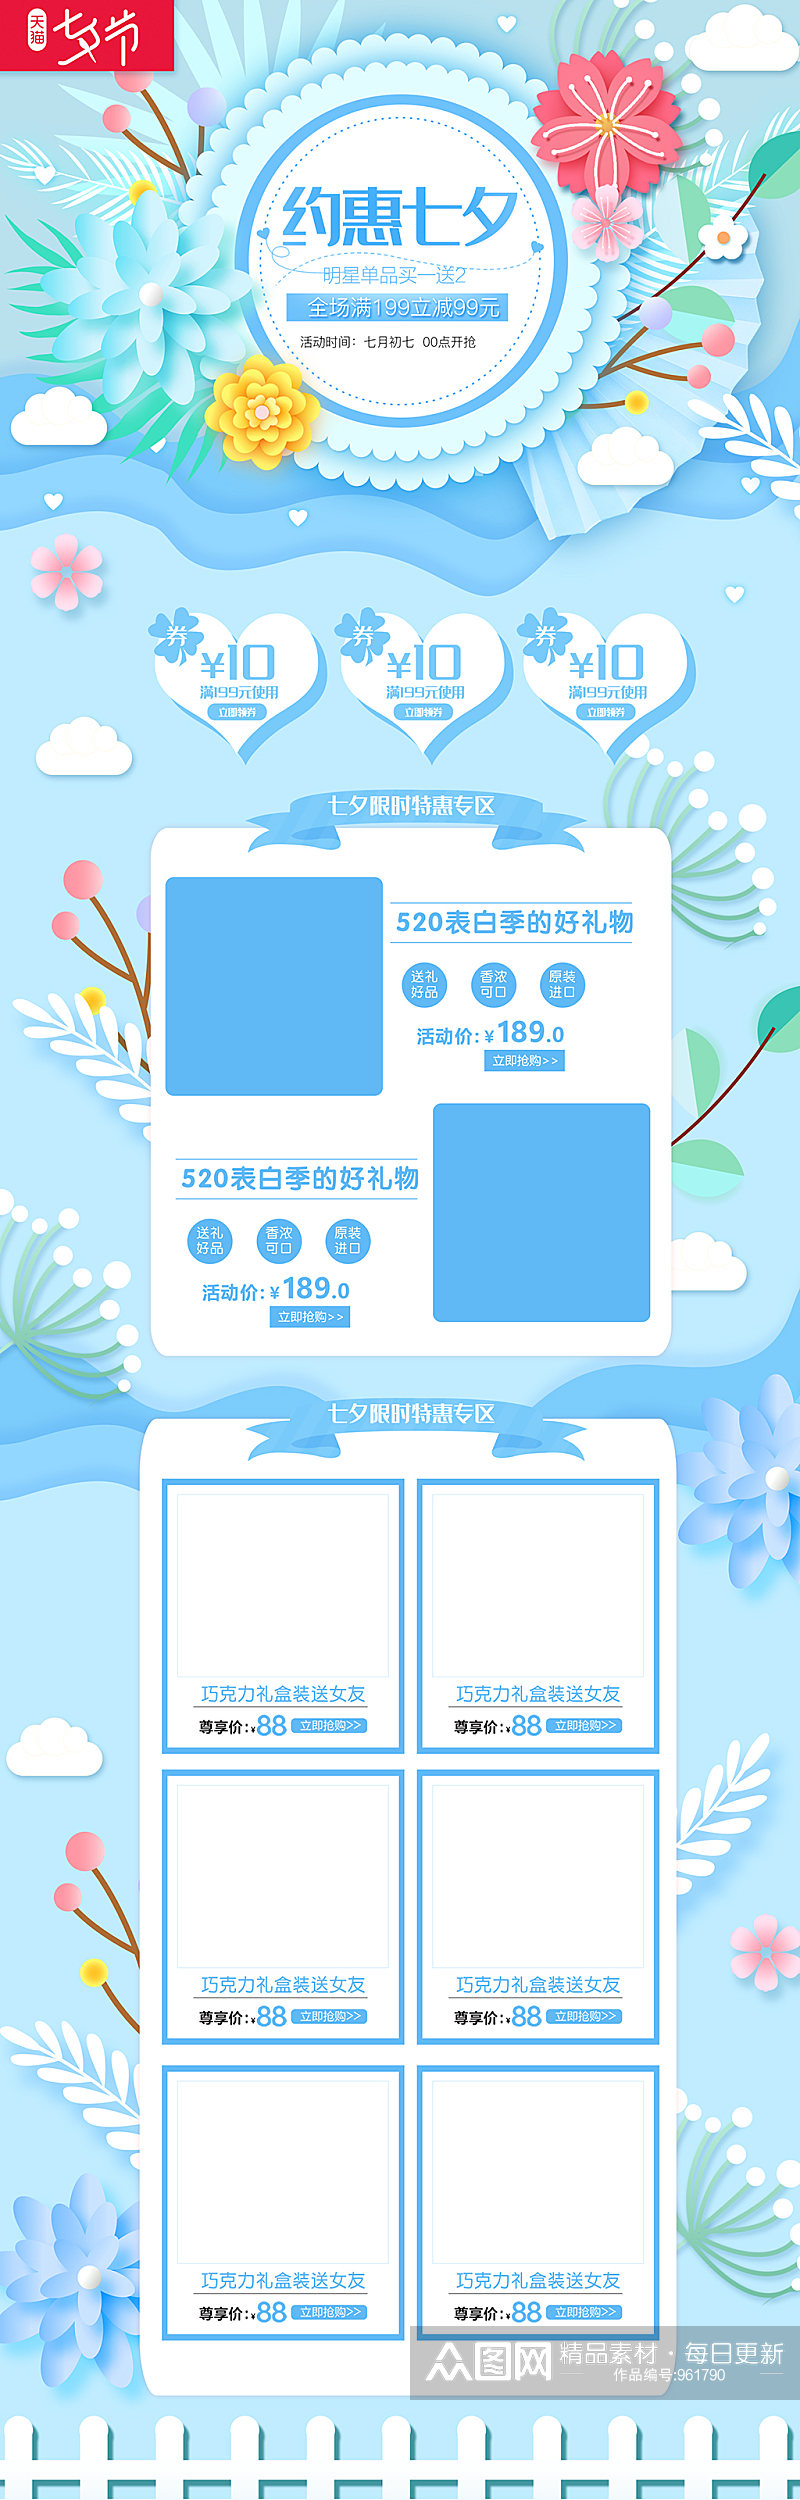 约惠七夕情人节促销活动首页设计素材